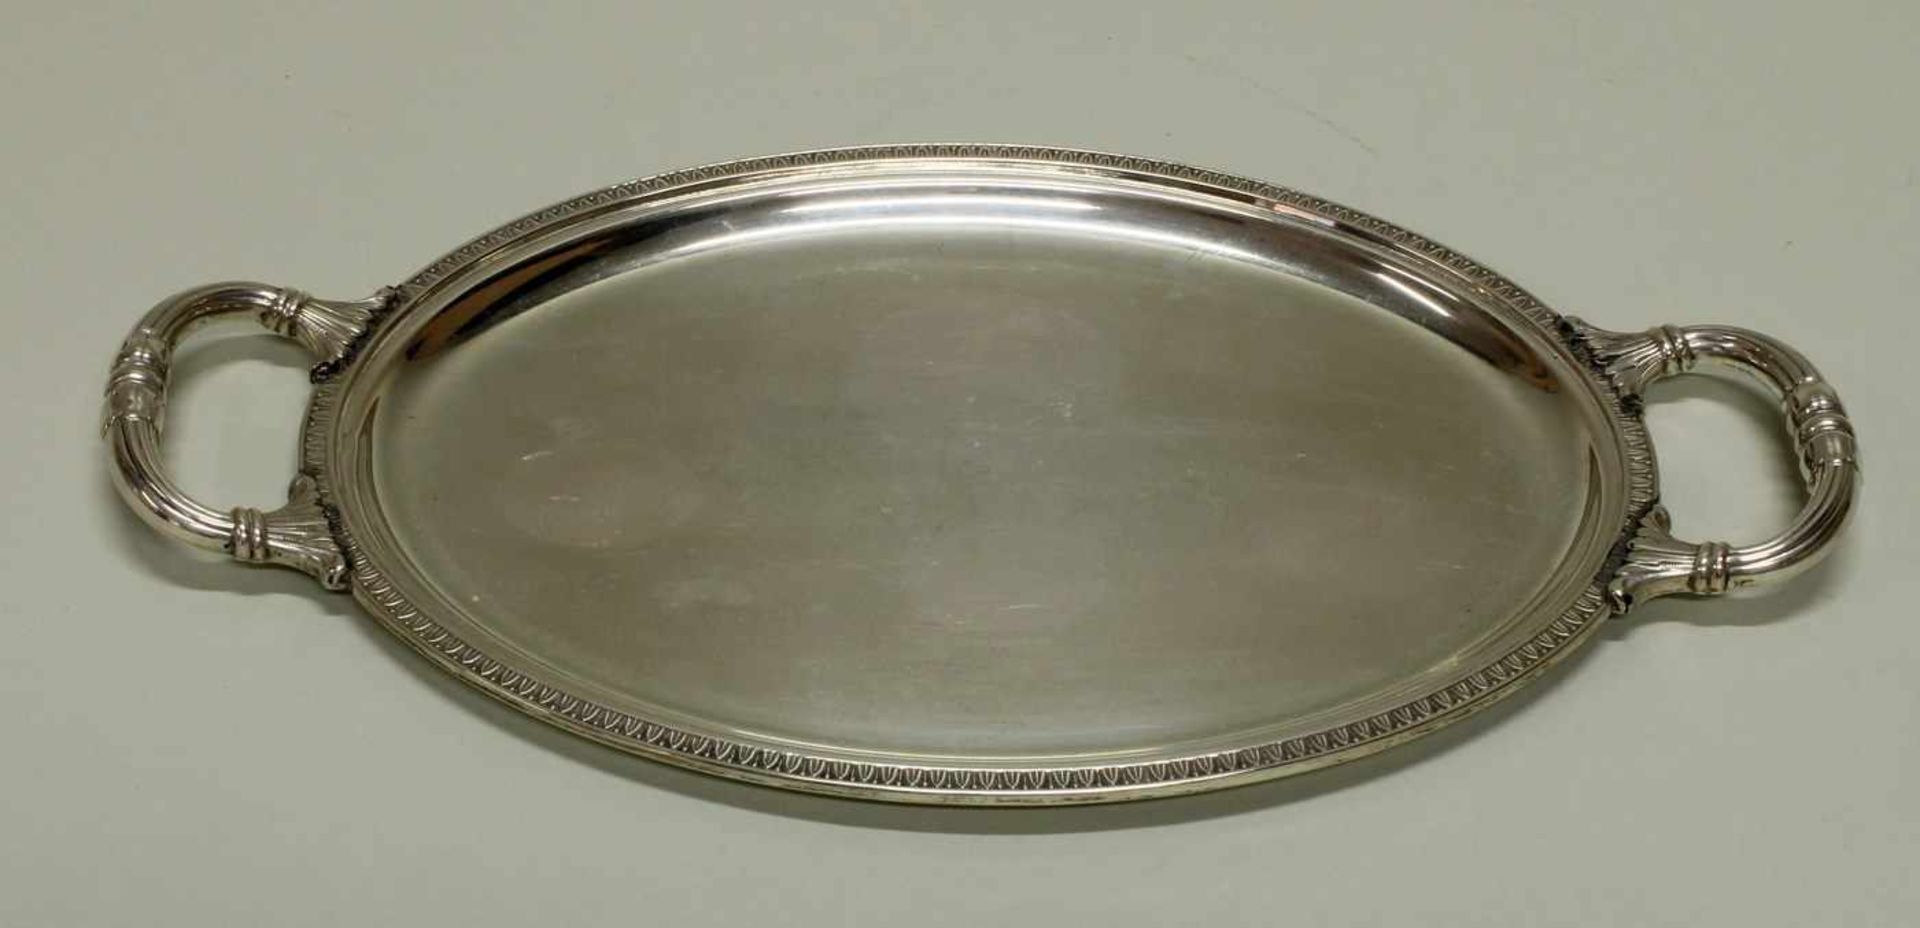 Tablett, Silber 800, Italien, oval, Blattstabrand, zwei Handhaben, 30.5 x 17.5 cm, ca. 253 g- - -